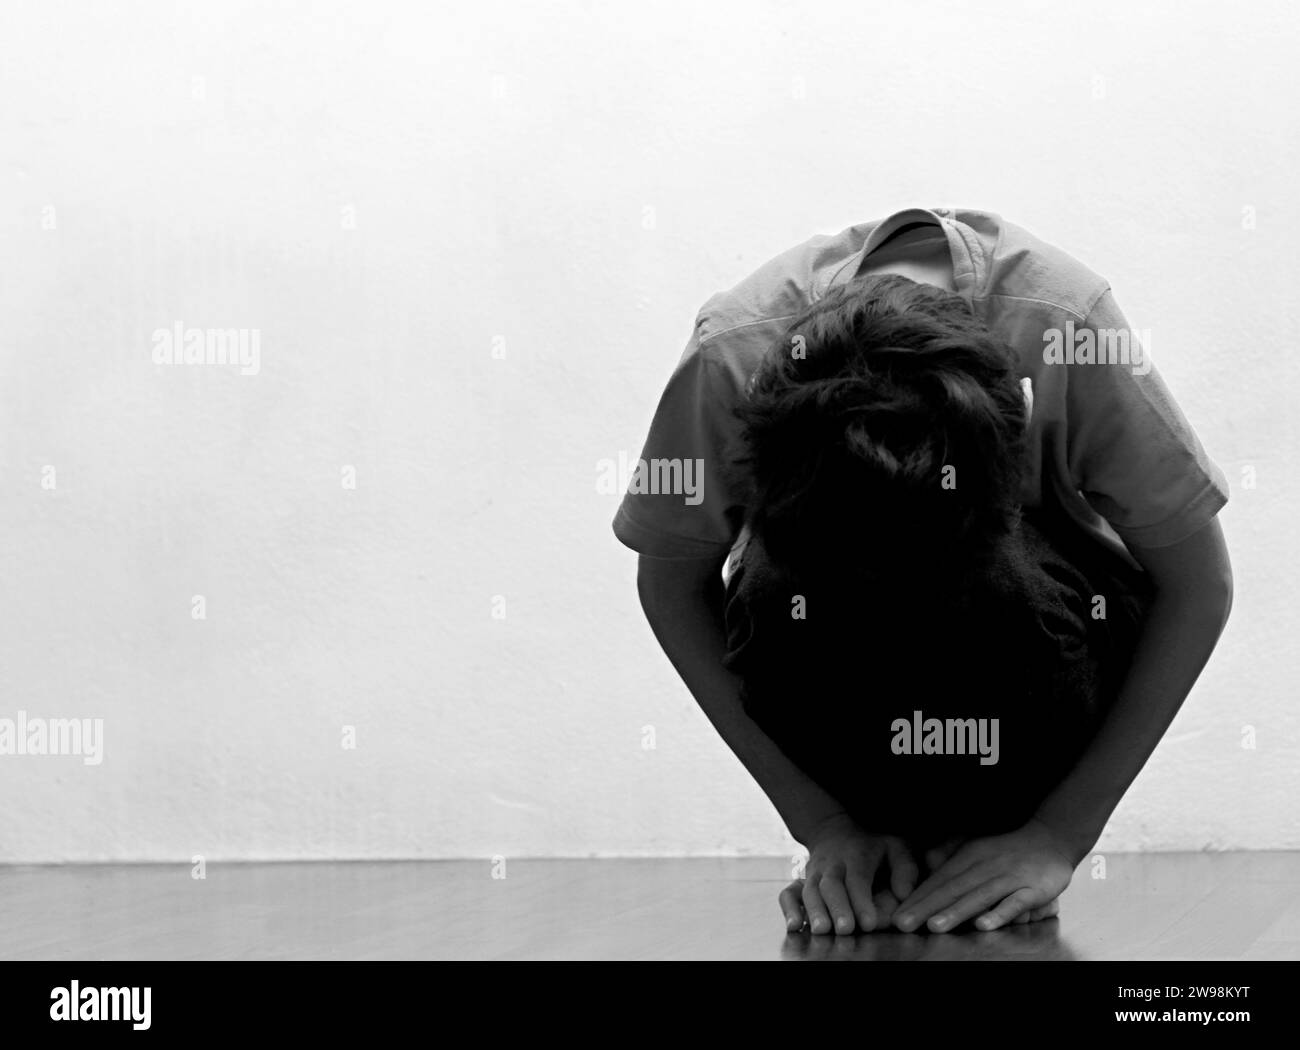 garçon priant dans la pauvreté sur le plancher image stock sans aide pleurant seul et tout seul sur fond blanc photo stock Banque D'Images